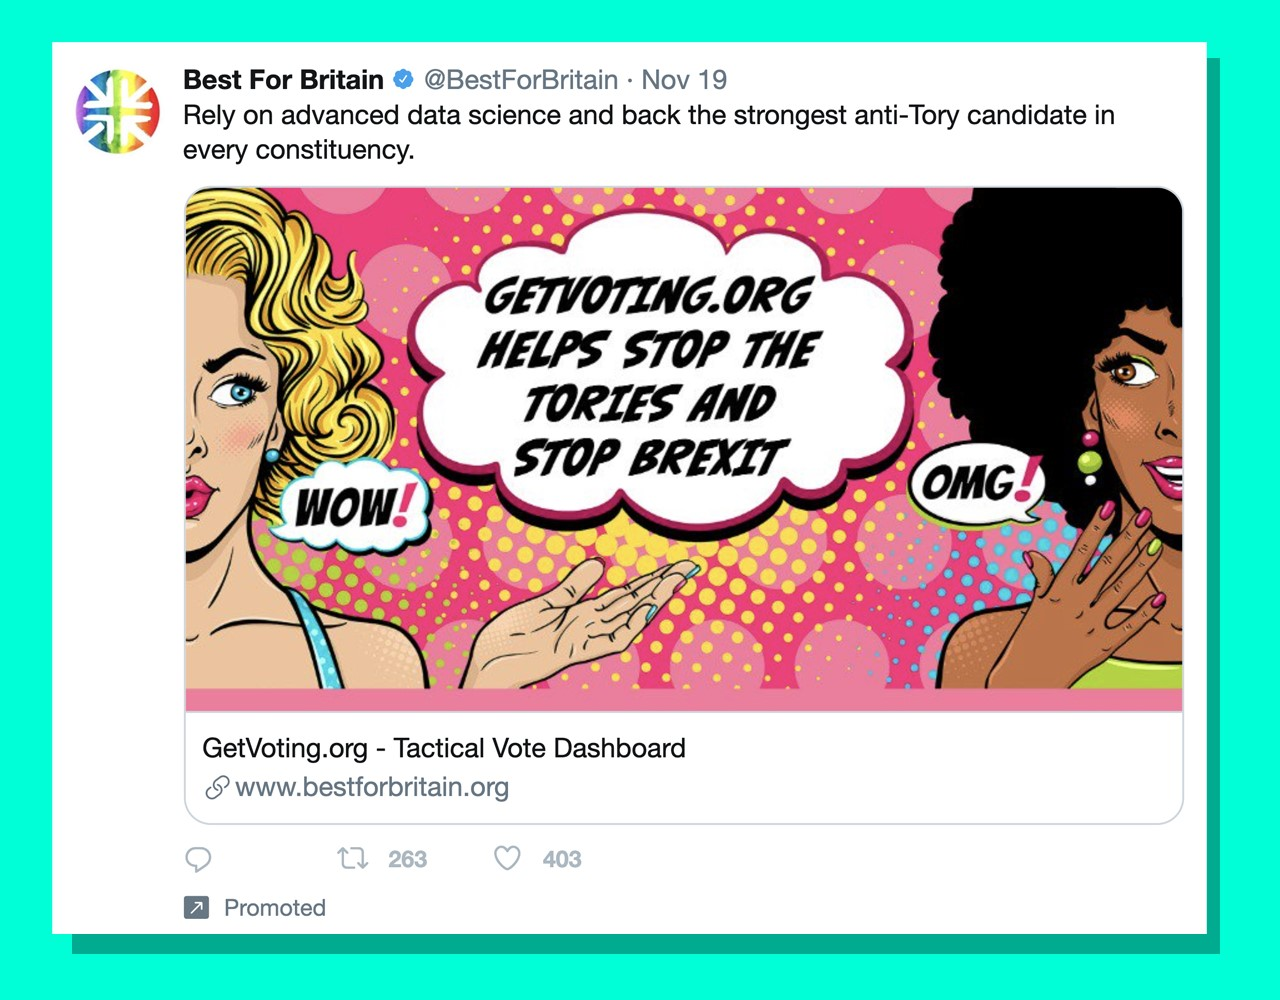 Рекламный ролик Best For Britain с изображением двух женщин из мультфильмов в стиле поп-арт. В тексте говорится: «Остановите тори и остановите Брексит».